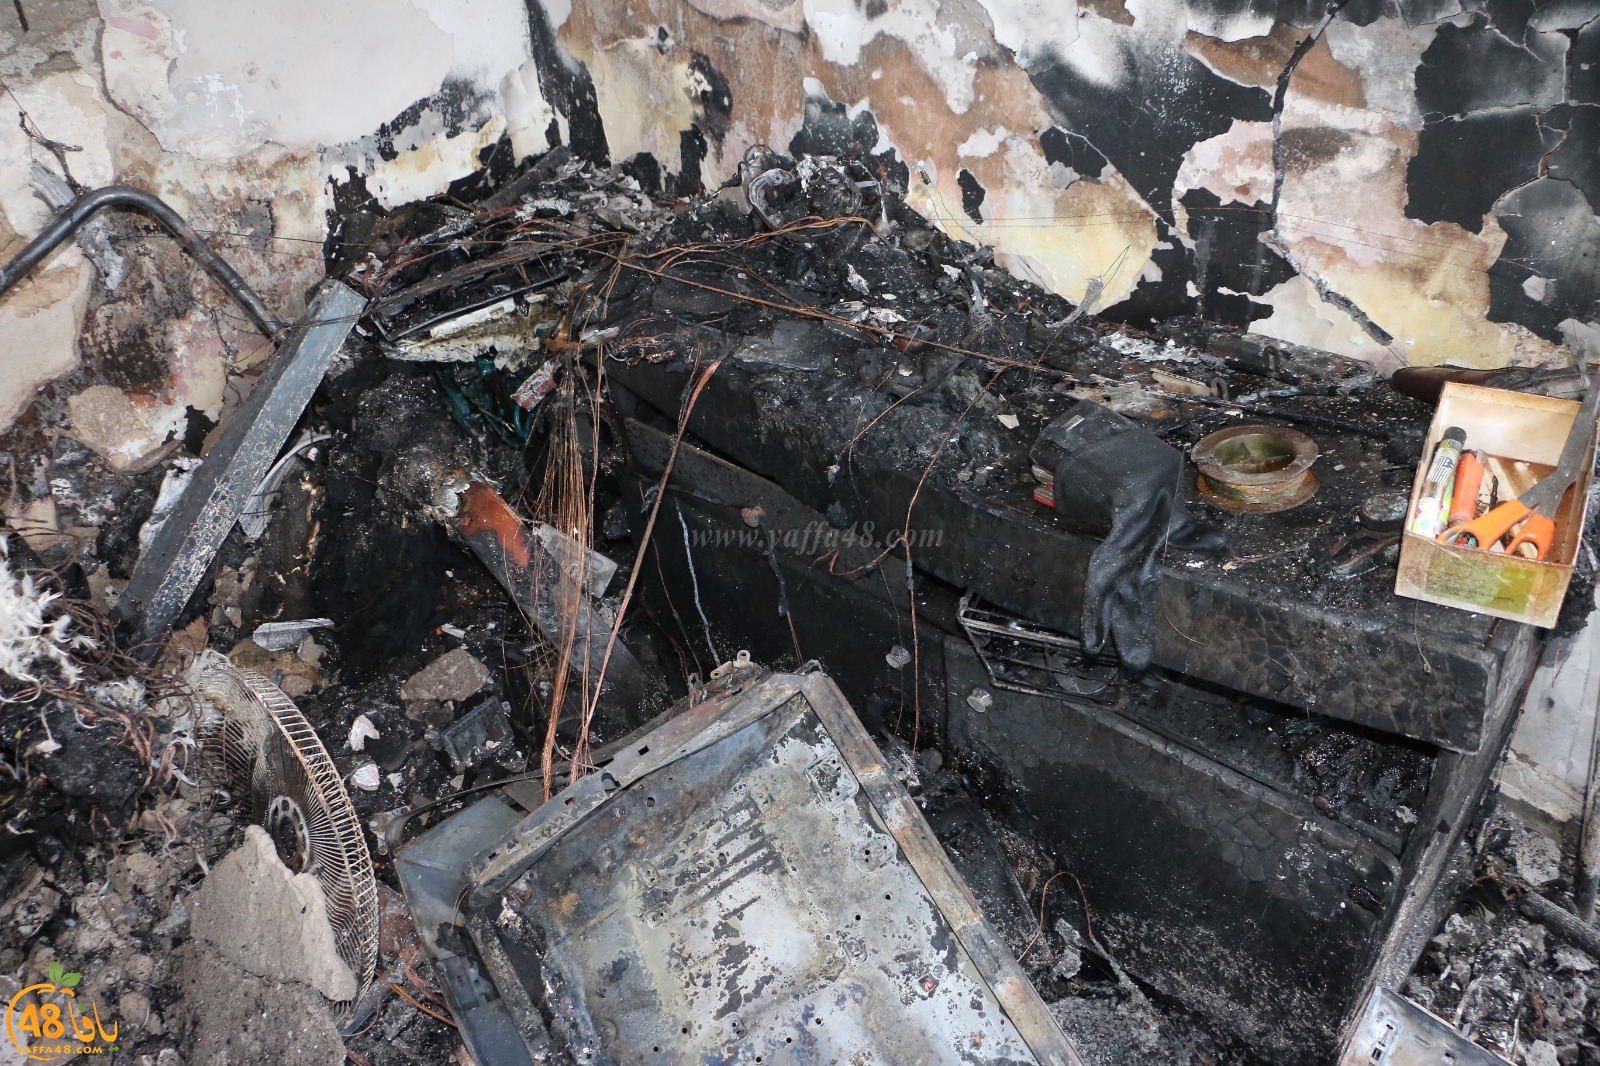  يافا: اجبروا الخواطر وساهموا في ترميم 3 بيوت متضررة من الحريق